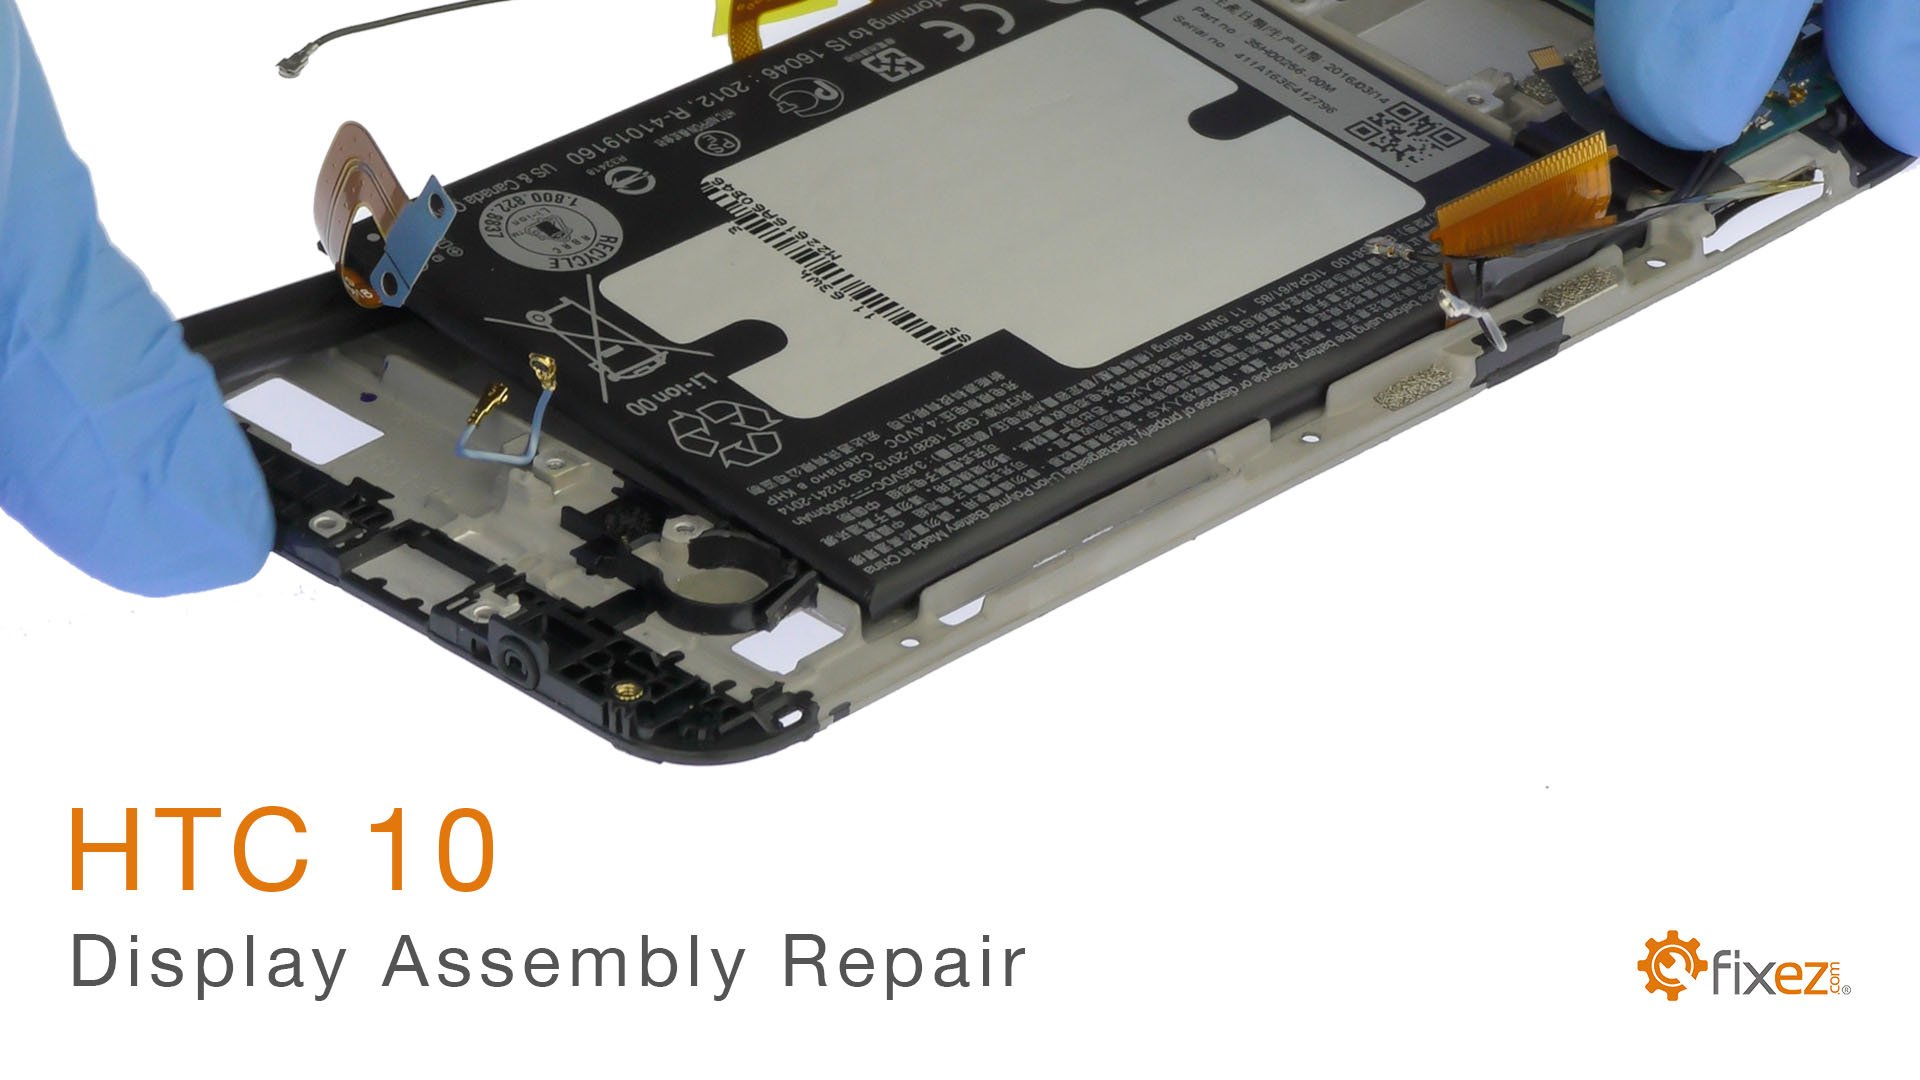 HTC 10 Display Assembly Repair